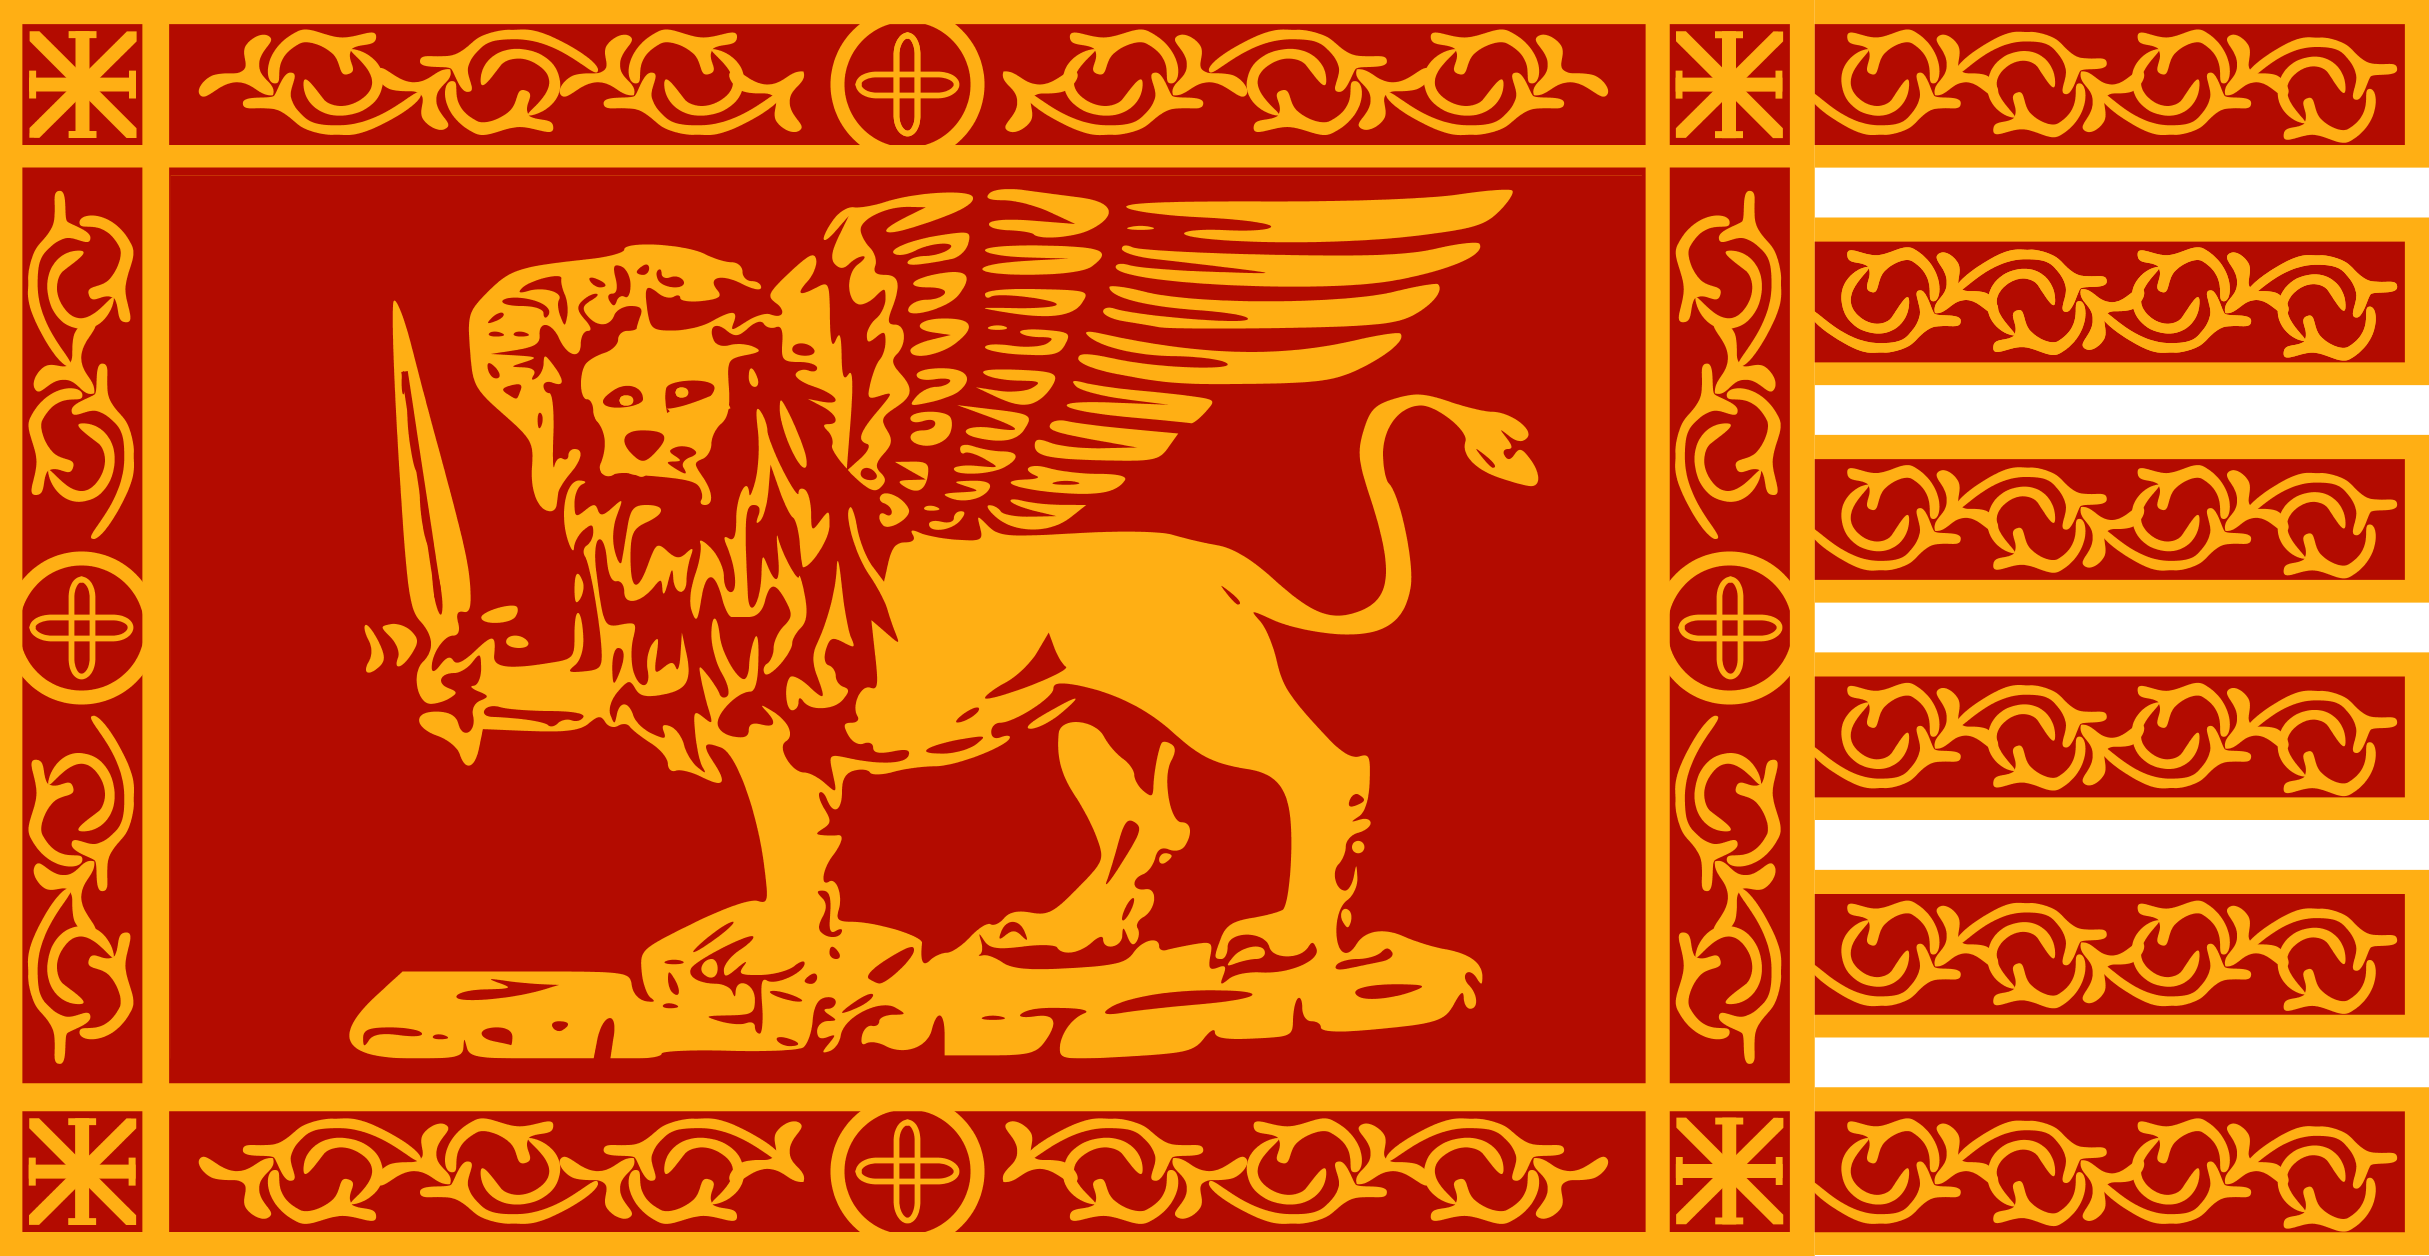 意大利威尼斯国旗 库存图片. 图片 包括有 突破, 吸引力, 象征, 设计, 外套, 飞行, 图标式, 目的地 - 157499893